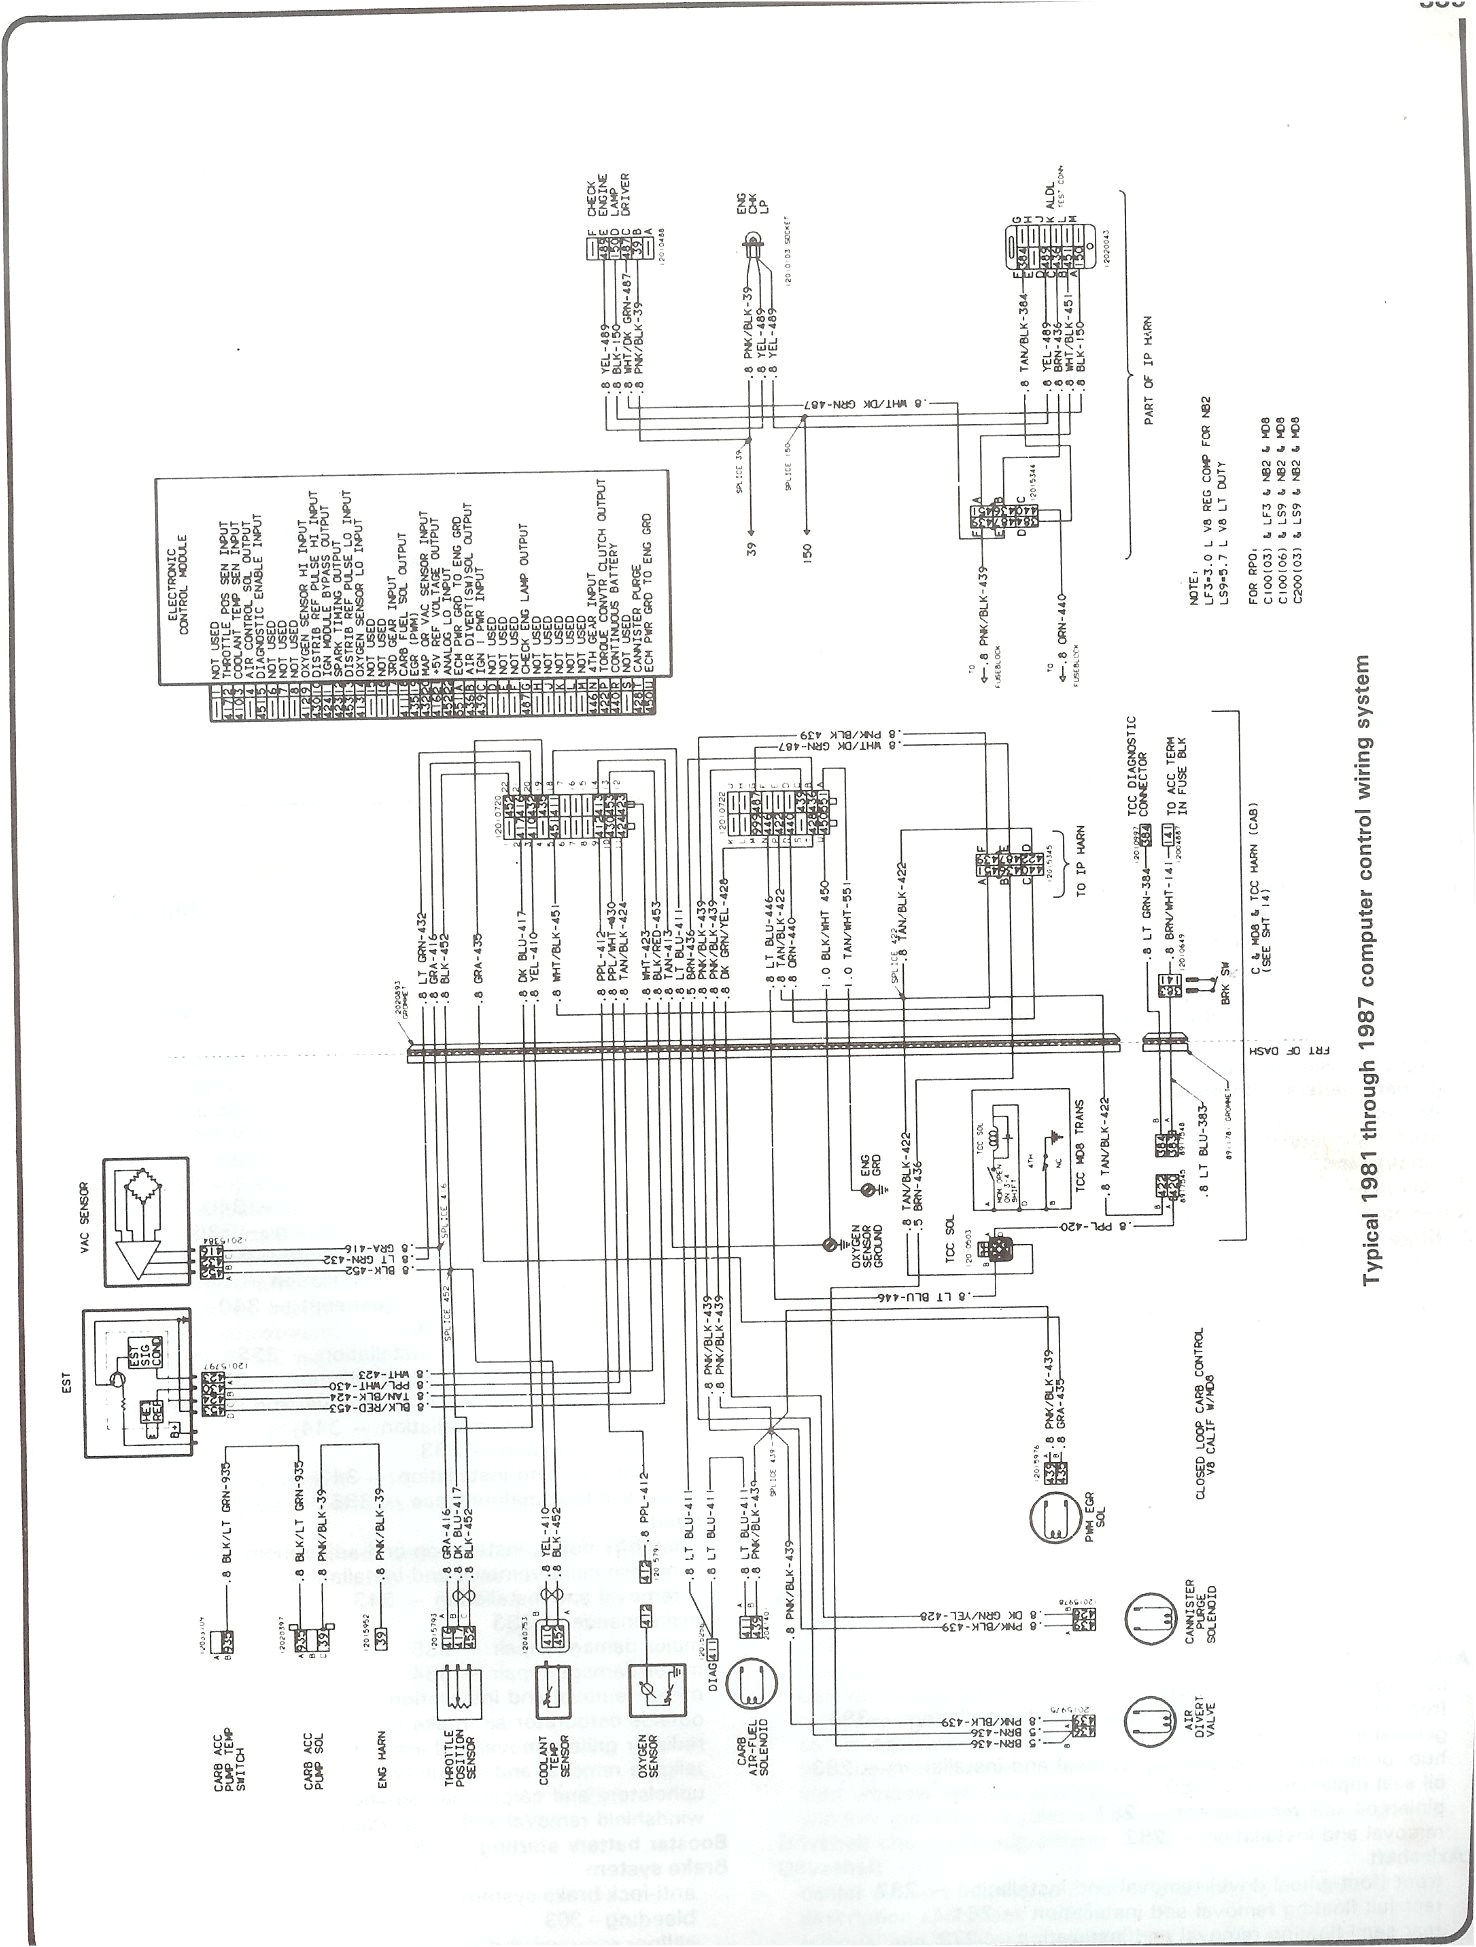 chevy silverado instrument cluster wiring diagram a chevy silverado instrument cluster wirin